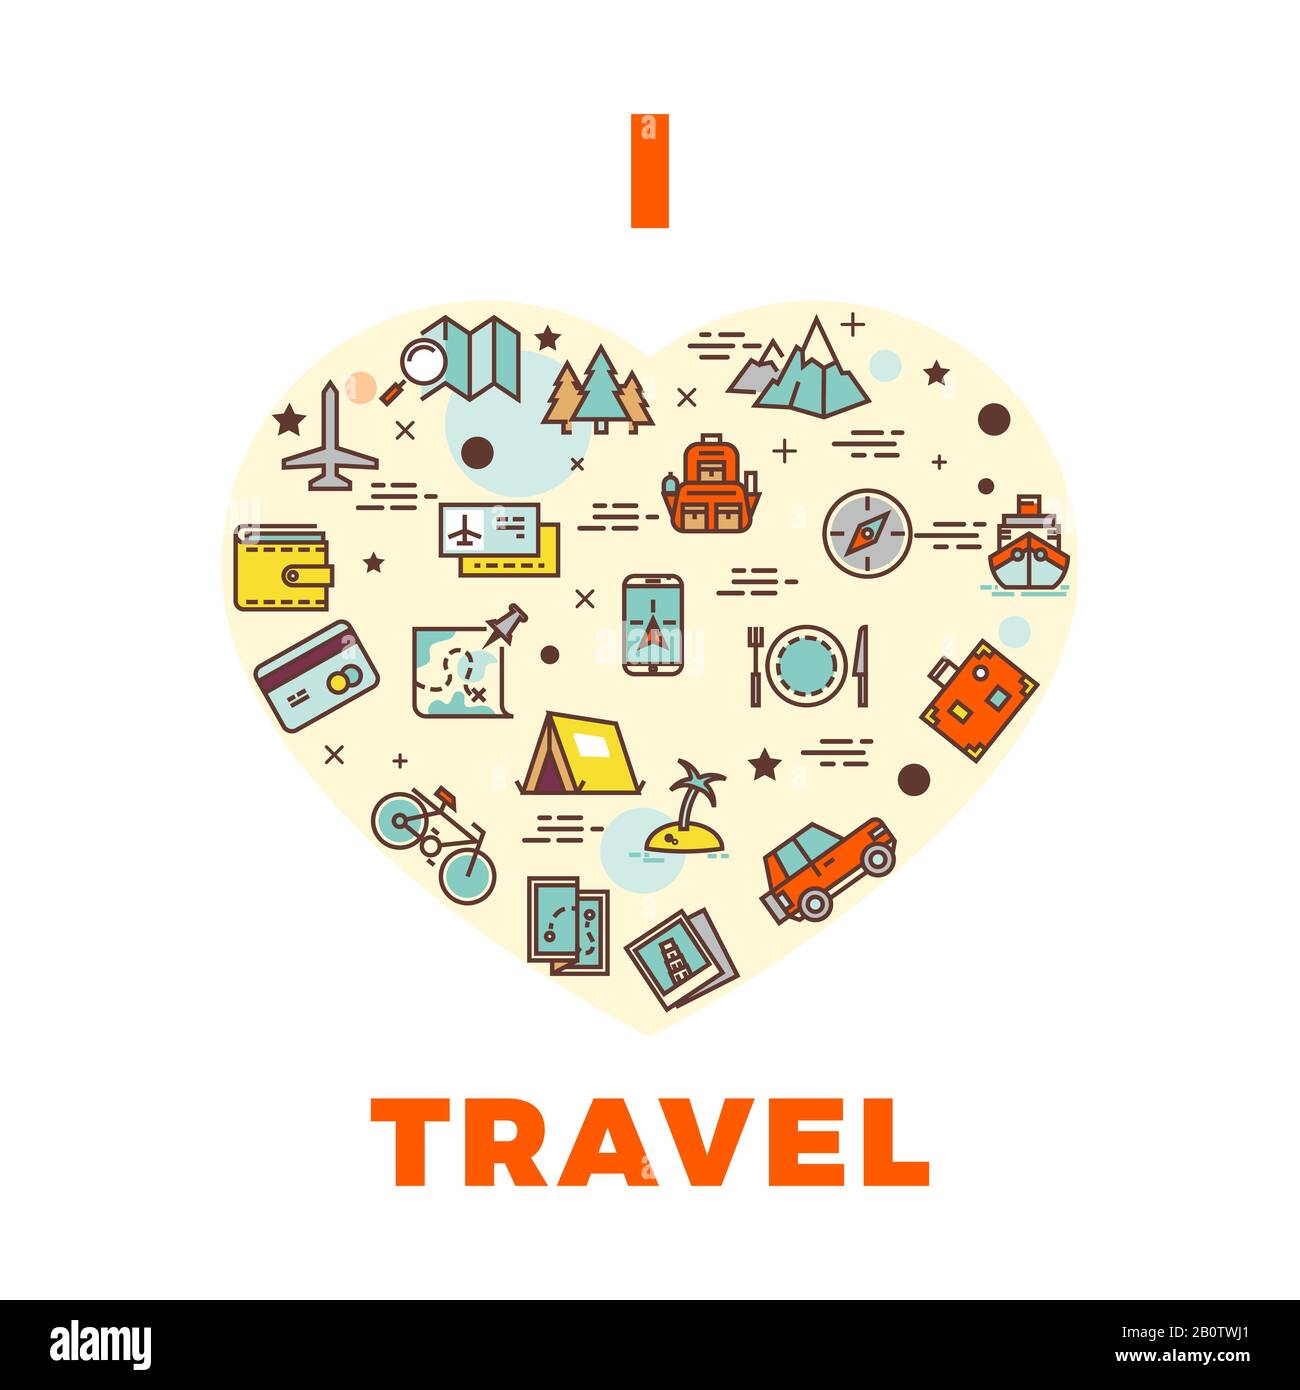 Reiseplakat oder -Druck - ich liebe das Reise-Design mit Herzblut von Reisesymbolen. Illustration des Tourismus- und Urlaubssemblems Stock Vektor